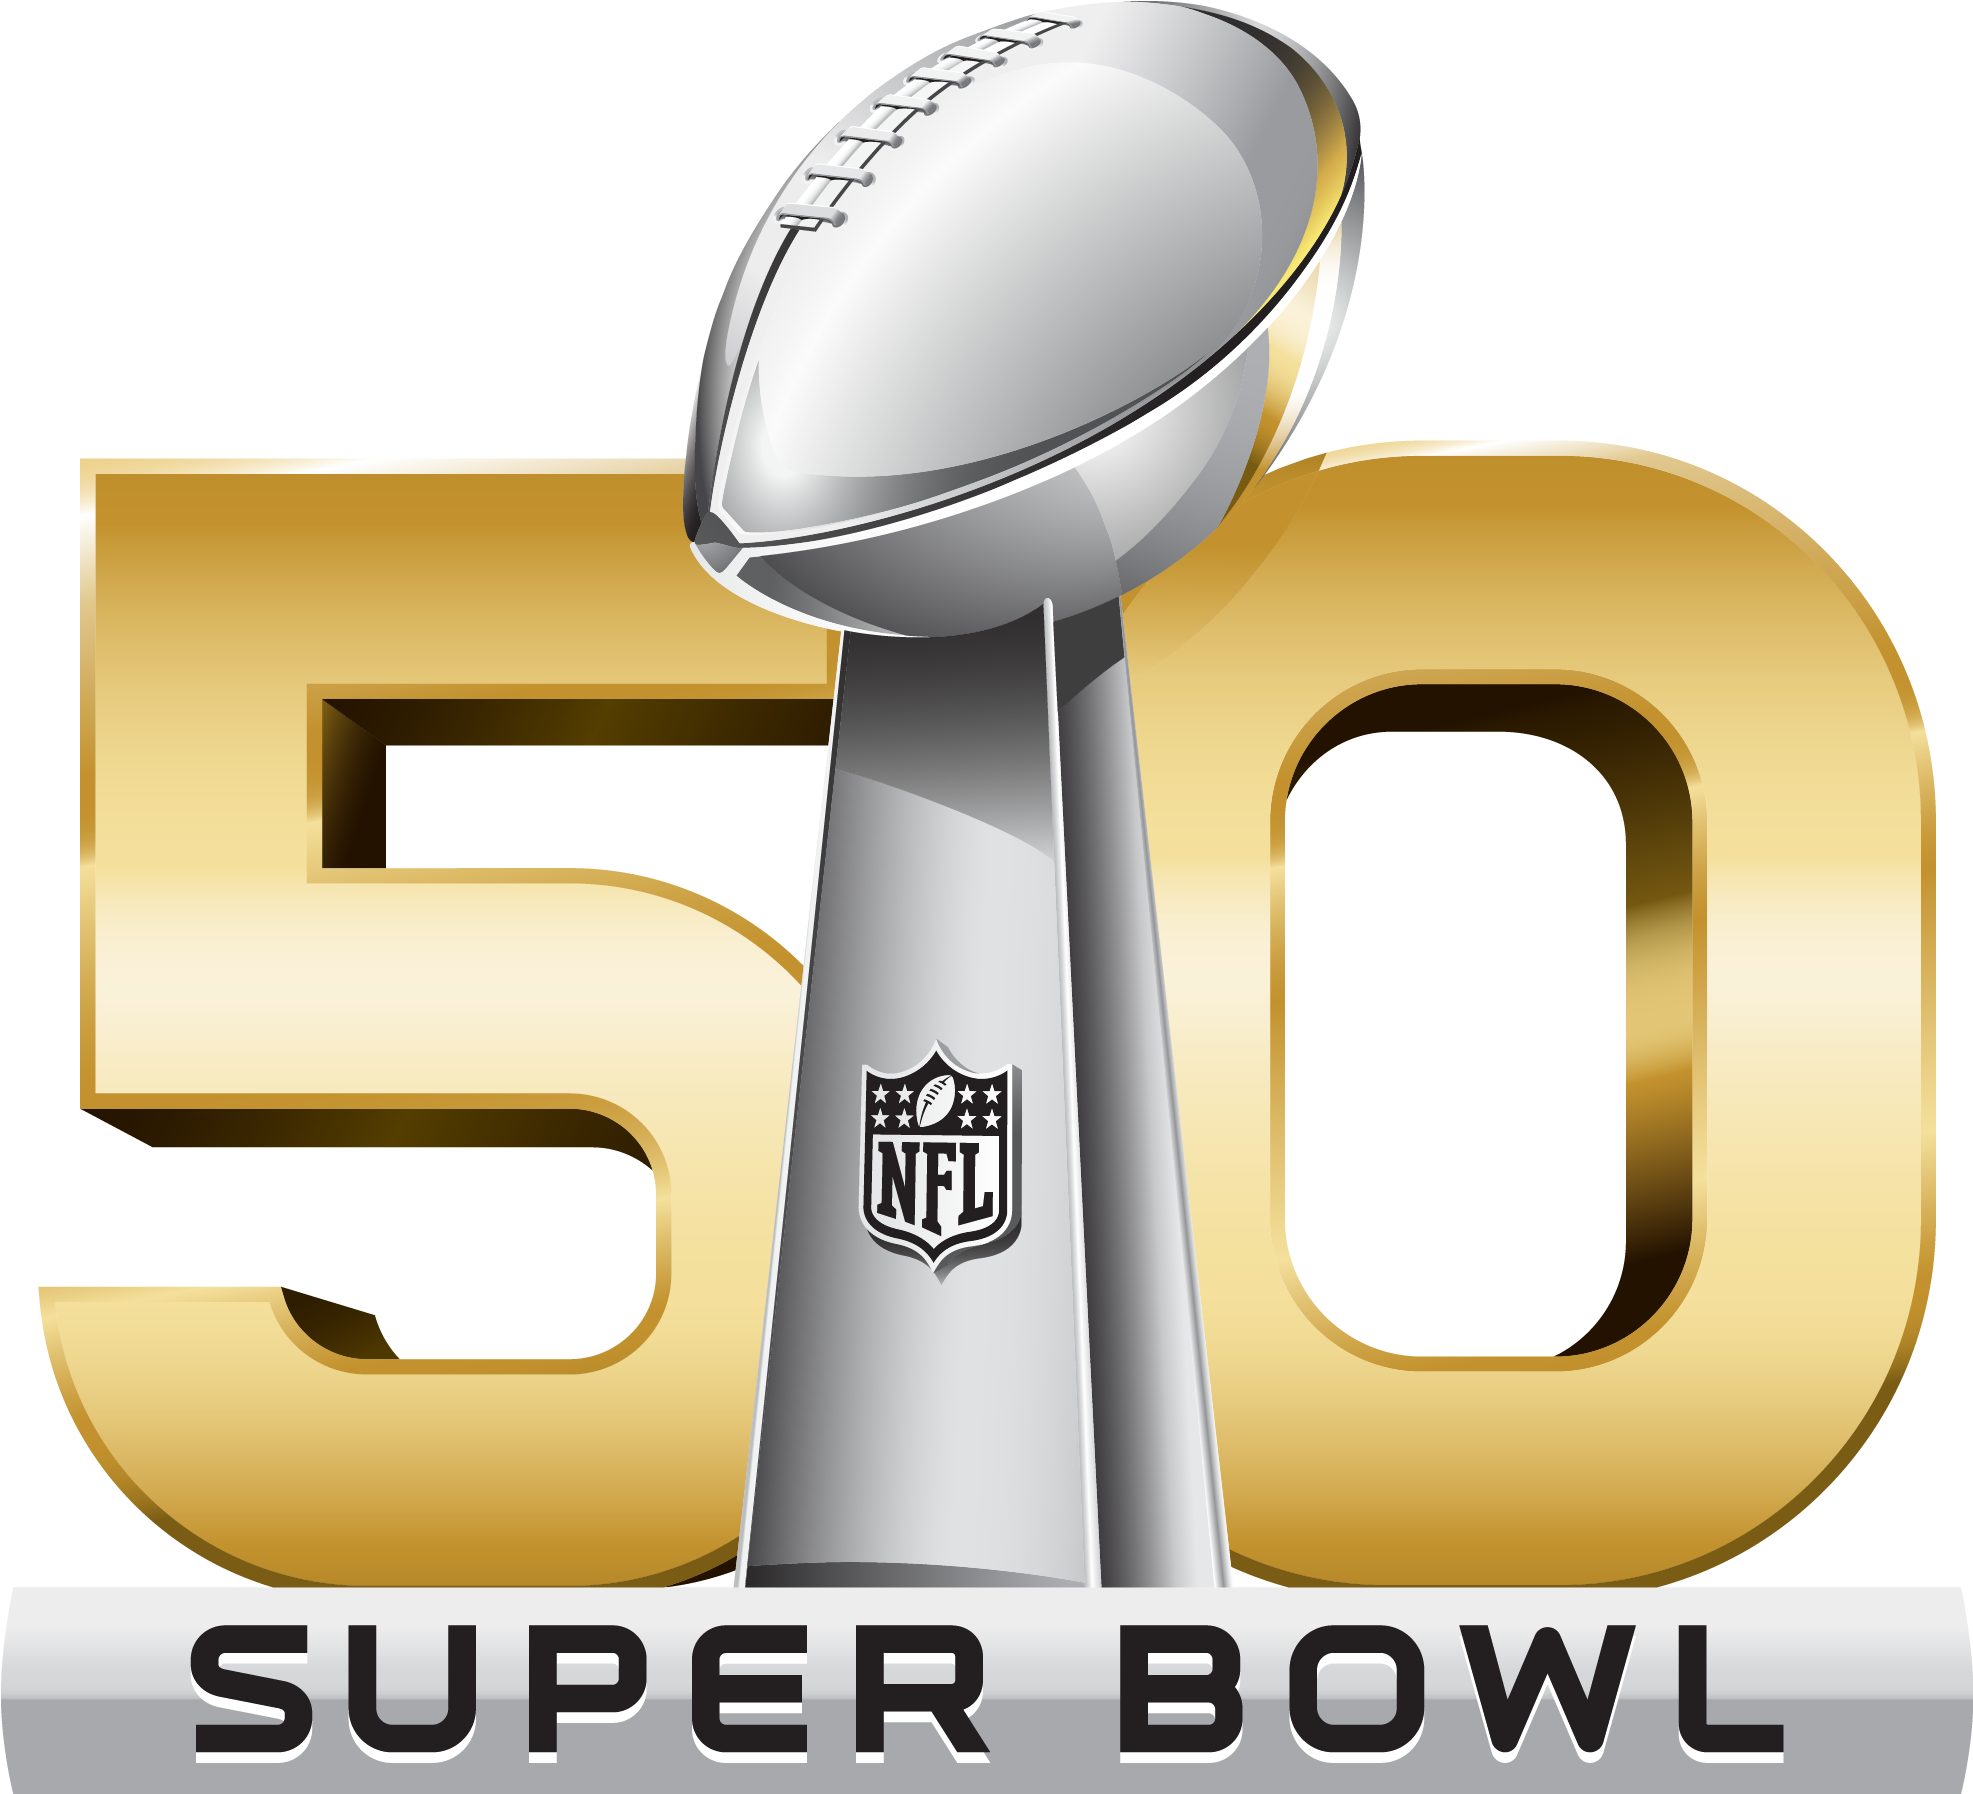 Super Bowl Background PNG Image